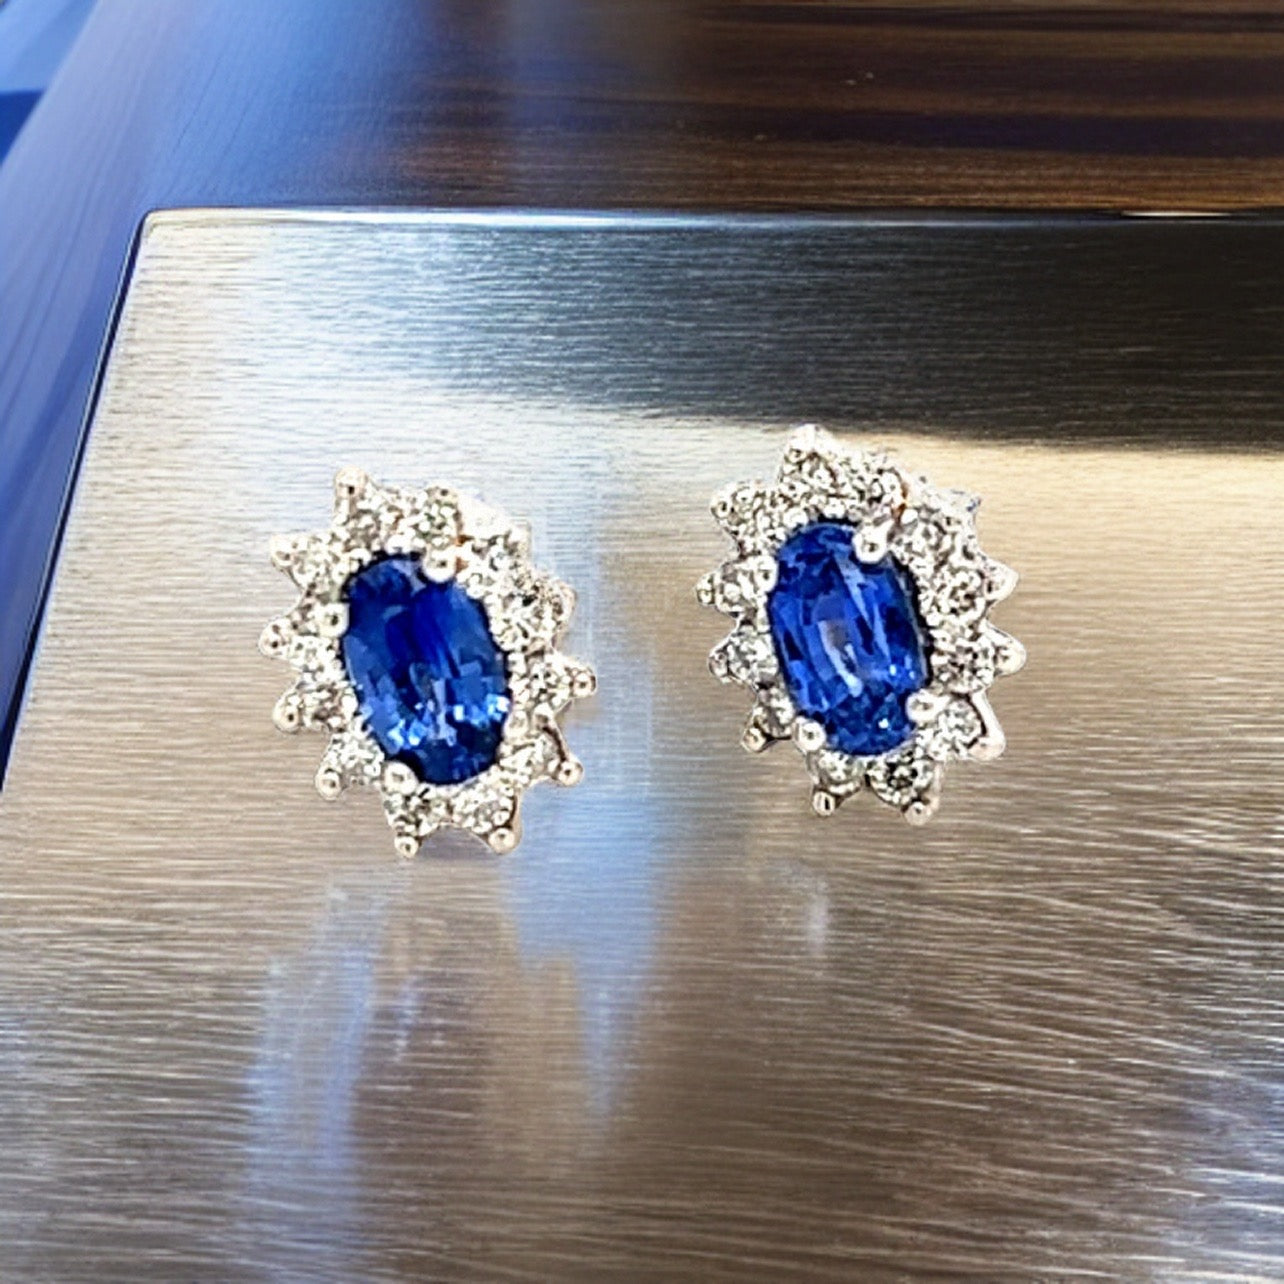 Natural Sapphire Diamond Stud Earrings 14k Gold 0.84 TCW Certified $2,975 215098 - Certified Fine Jewelry